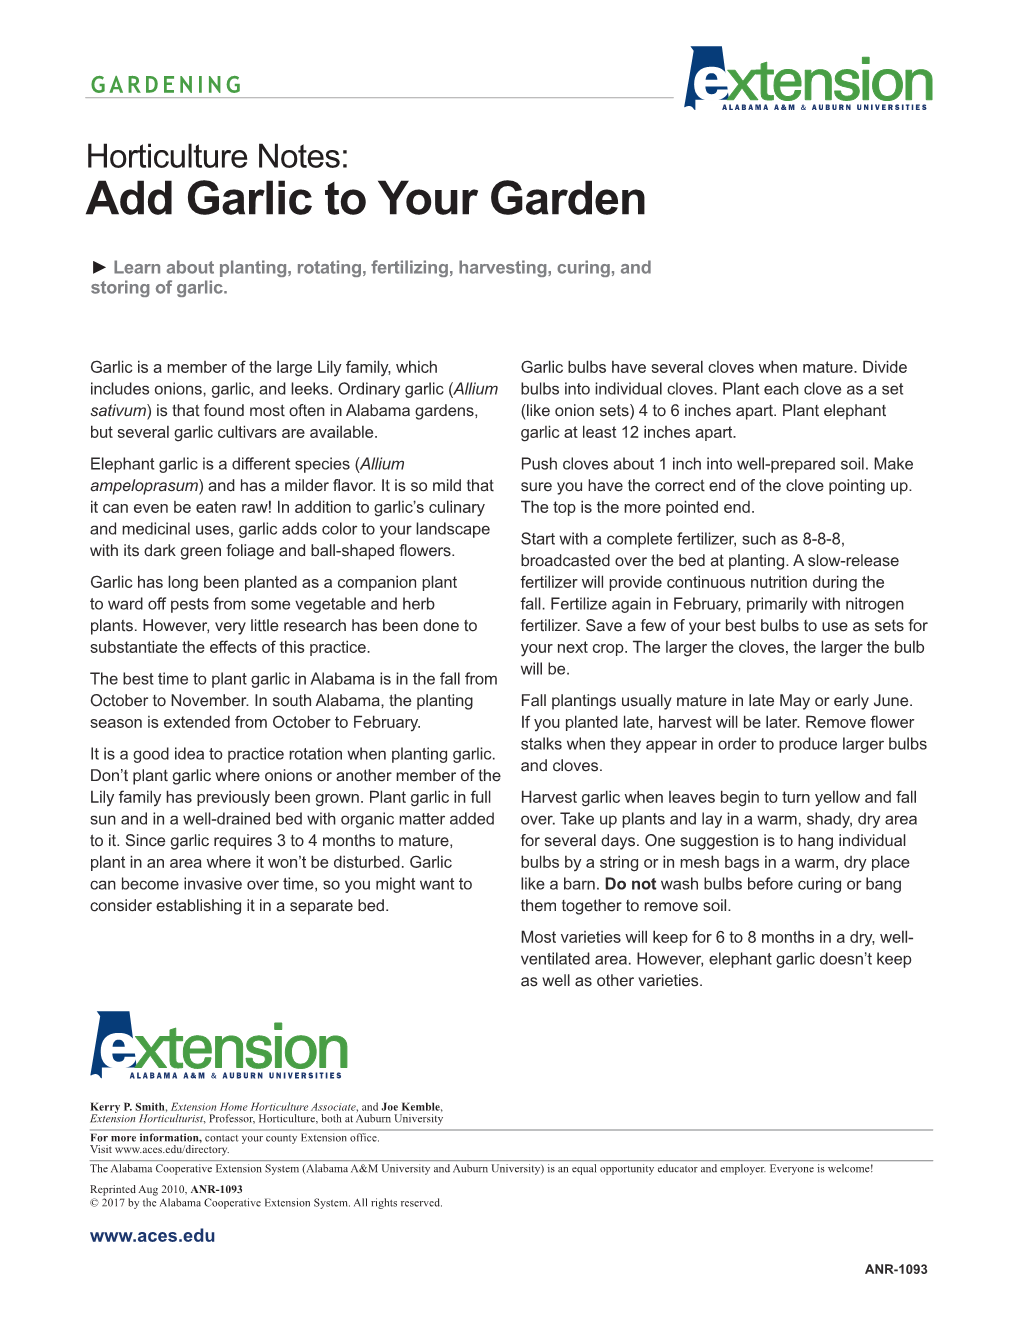 Add Garlic to Your Garden